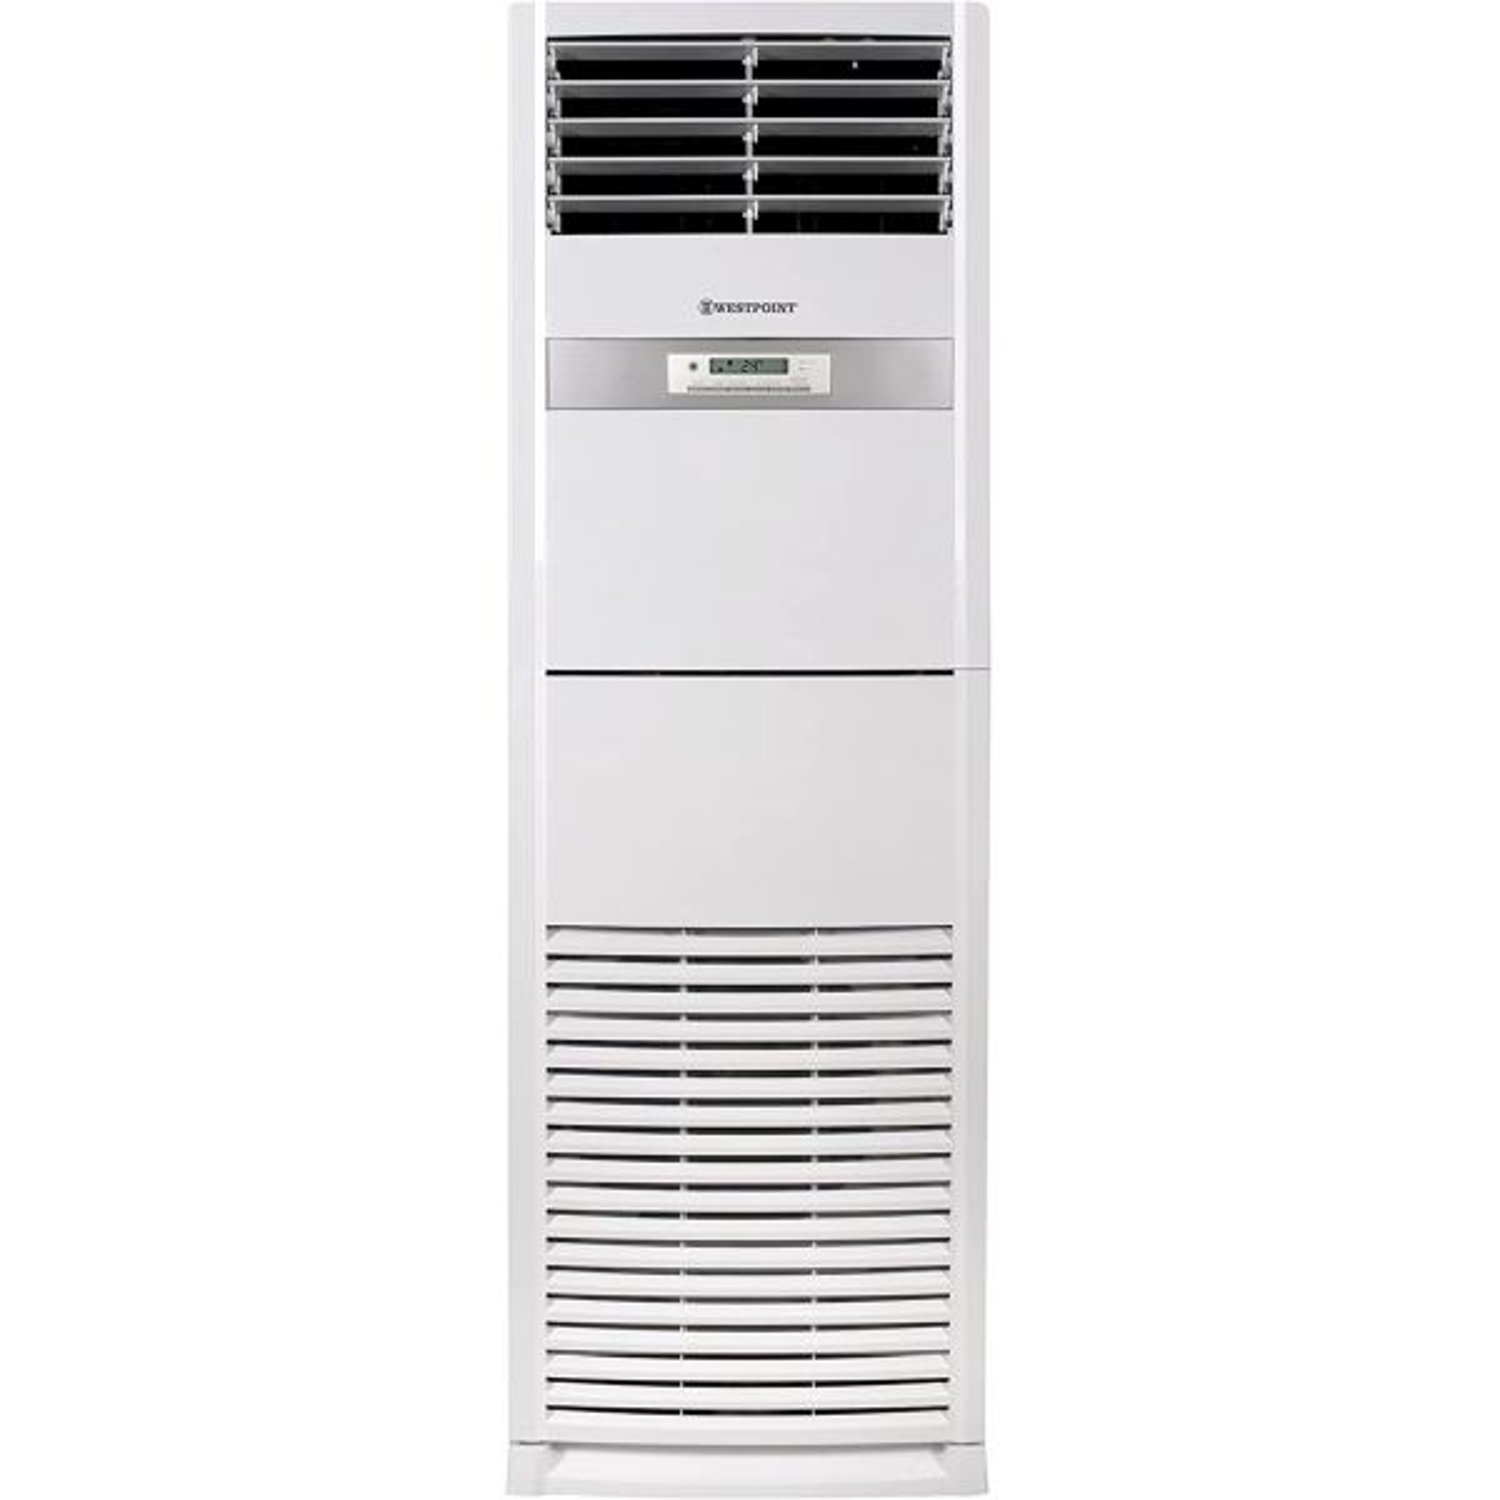 WestPoint 5 Ton Standing Conditioner WAM6021LTSL